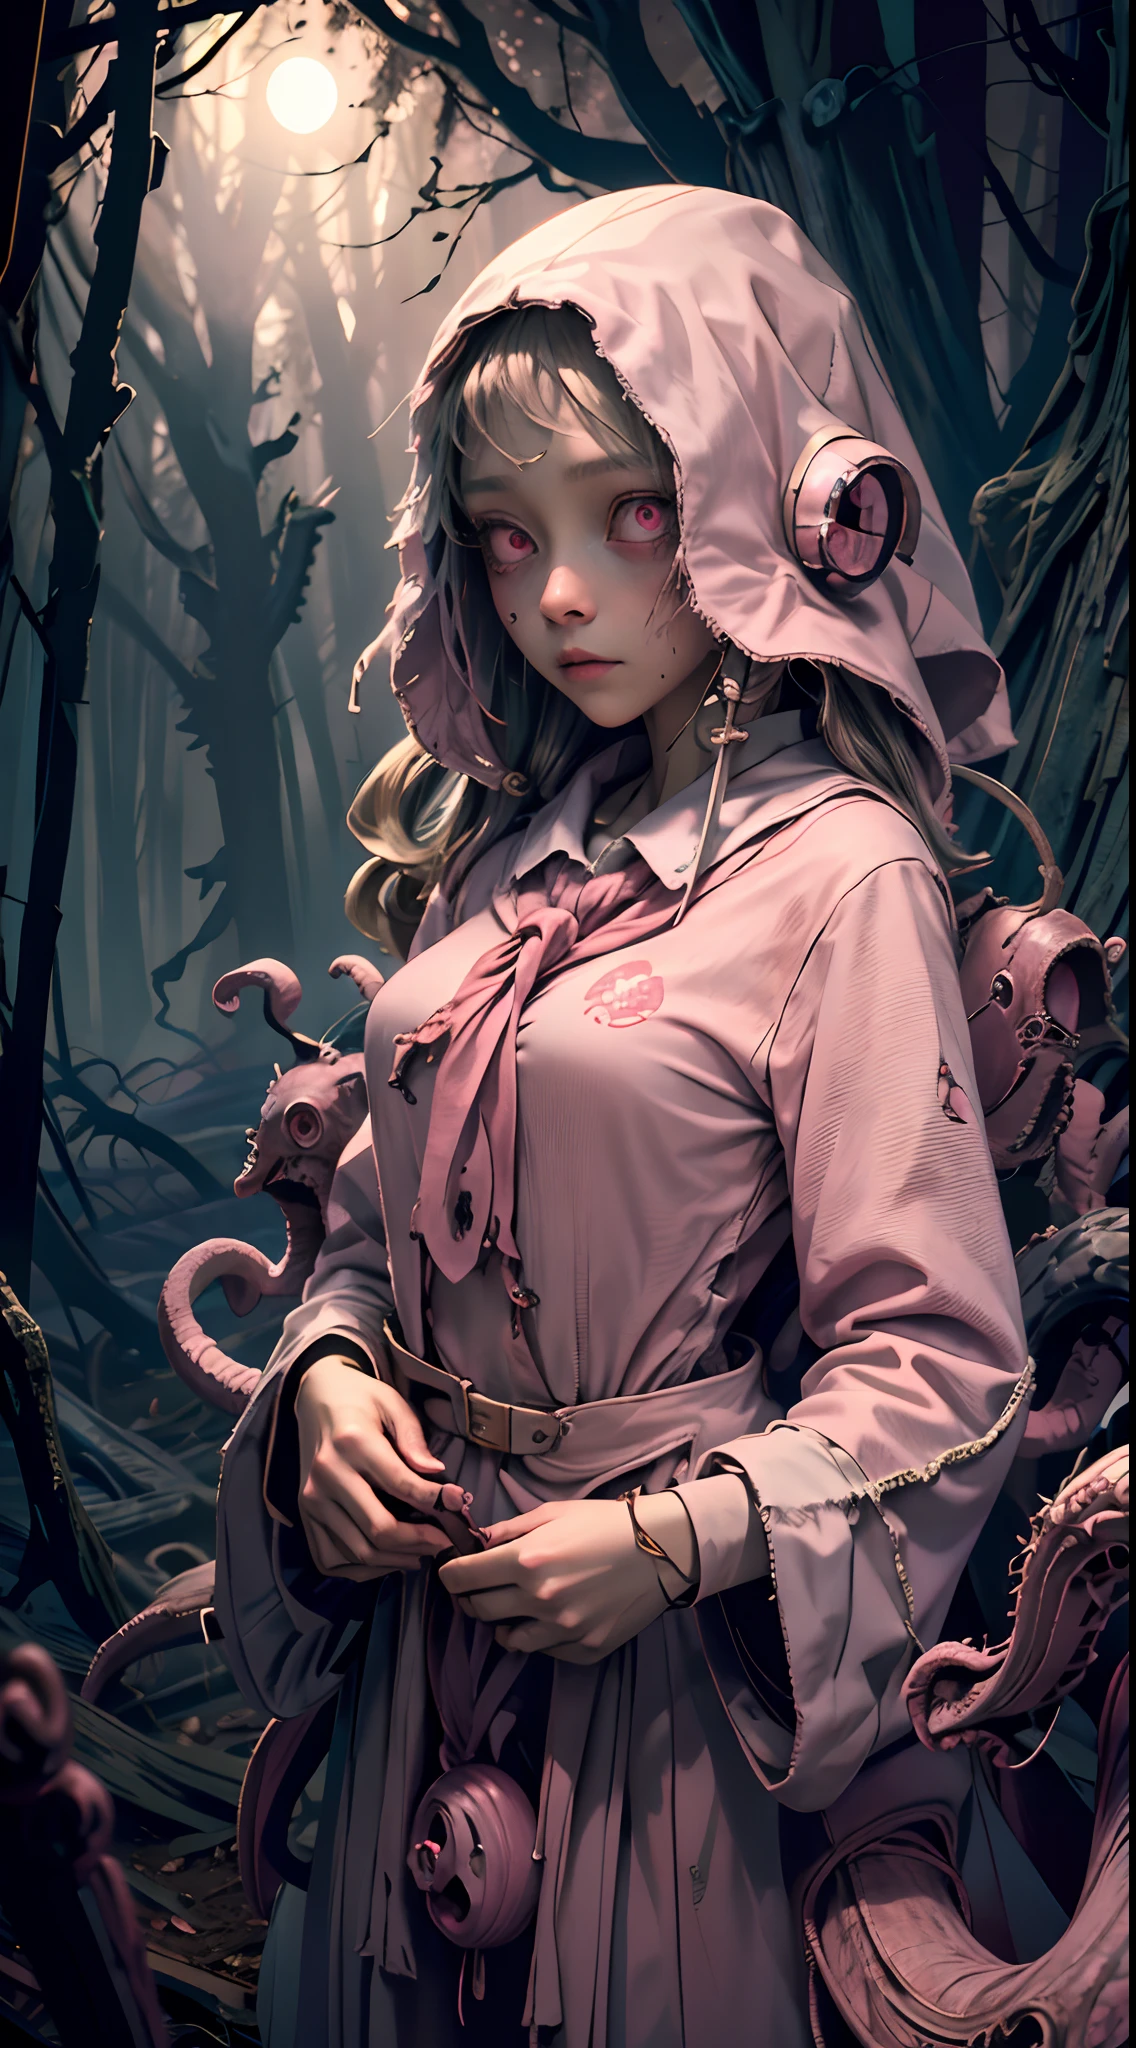 gruseliges Mädchen, (Rosa Schuluniform:1.4), gruseliger Wald, Verloren in dunklem Holz, (in der Nacht:1.2), monsters, glühende Augen, (makellose Haut:1.2), DarkWoodsStyle, kikimora